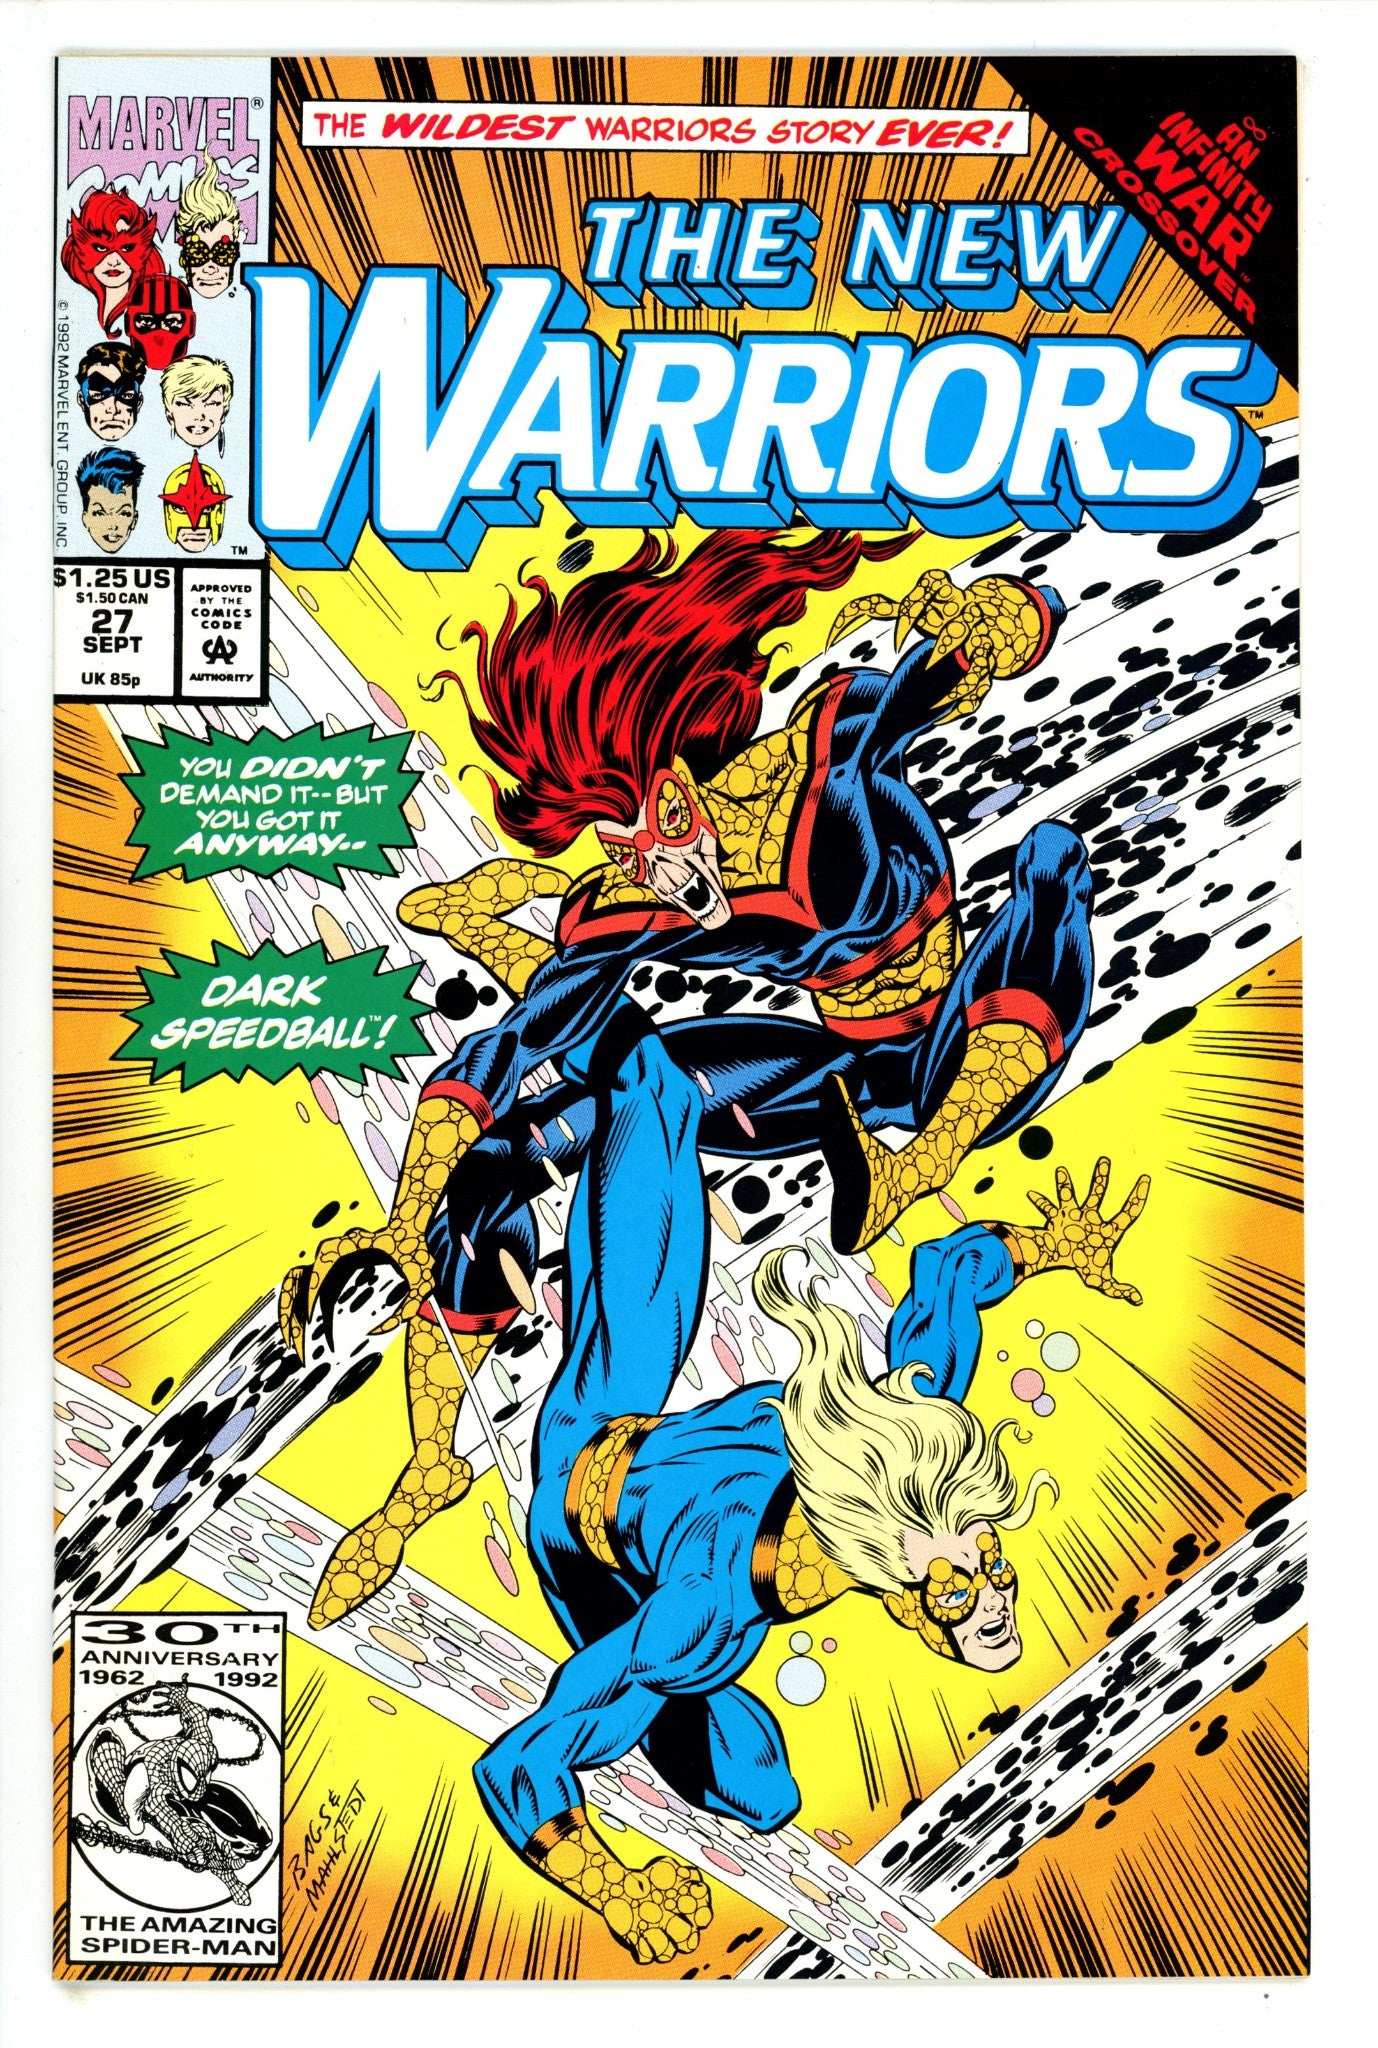 The New Warriors Vol 1 27 (1992)